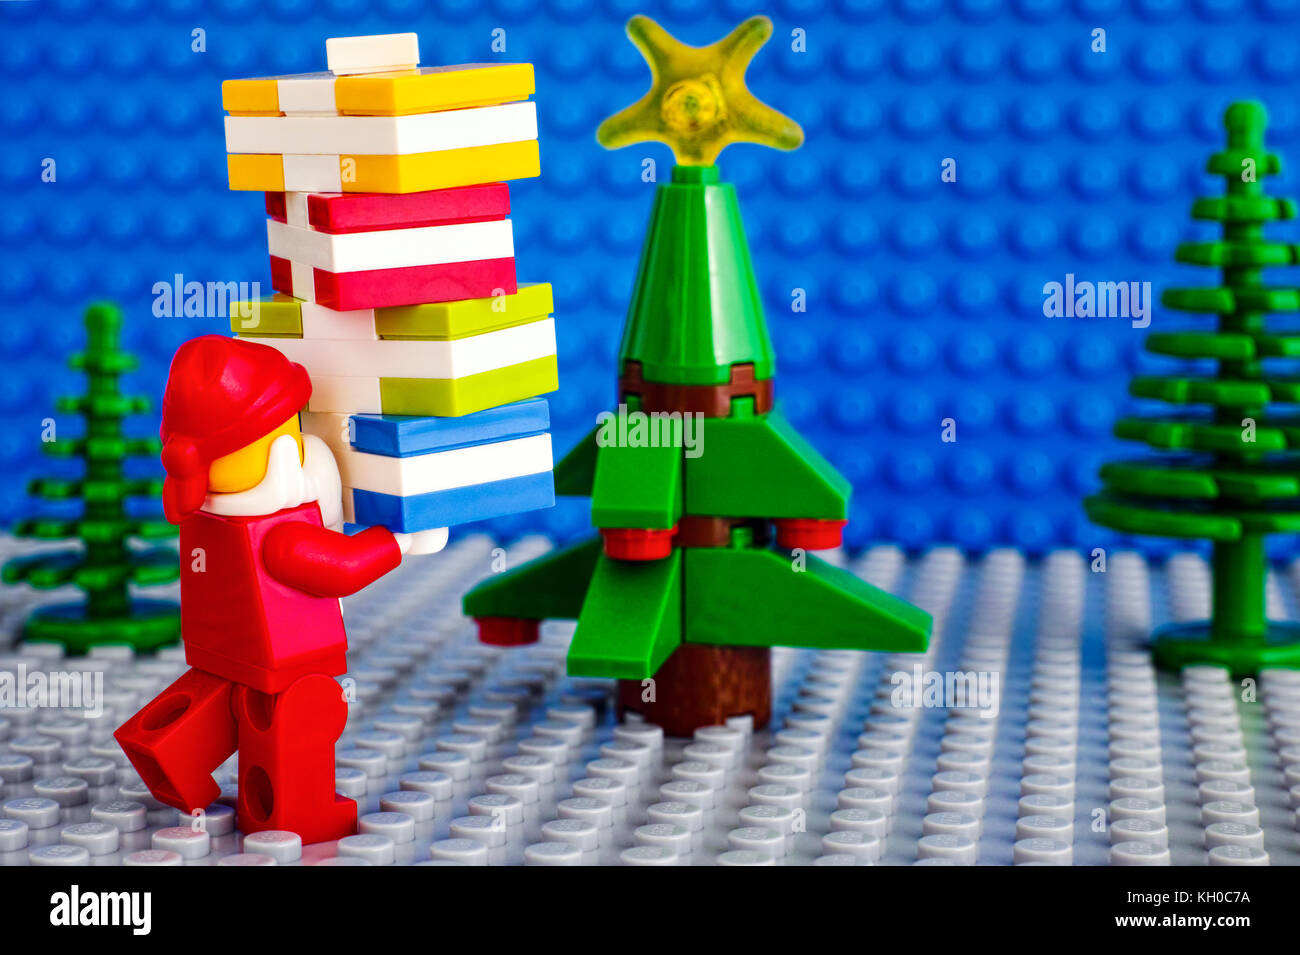 Tambow, Russische Föderation - November 06, 2017 lego Santa Claus mit Stapel von präsentiert in der Nähe von Weihnachten Baum. Studio gedreht. Stockfoto